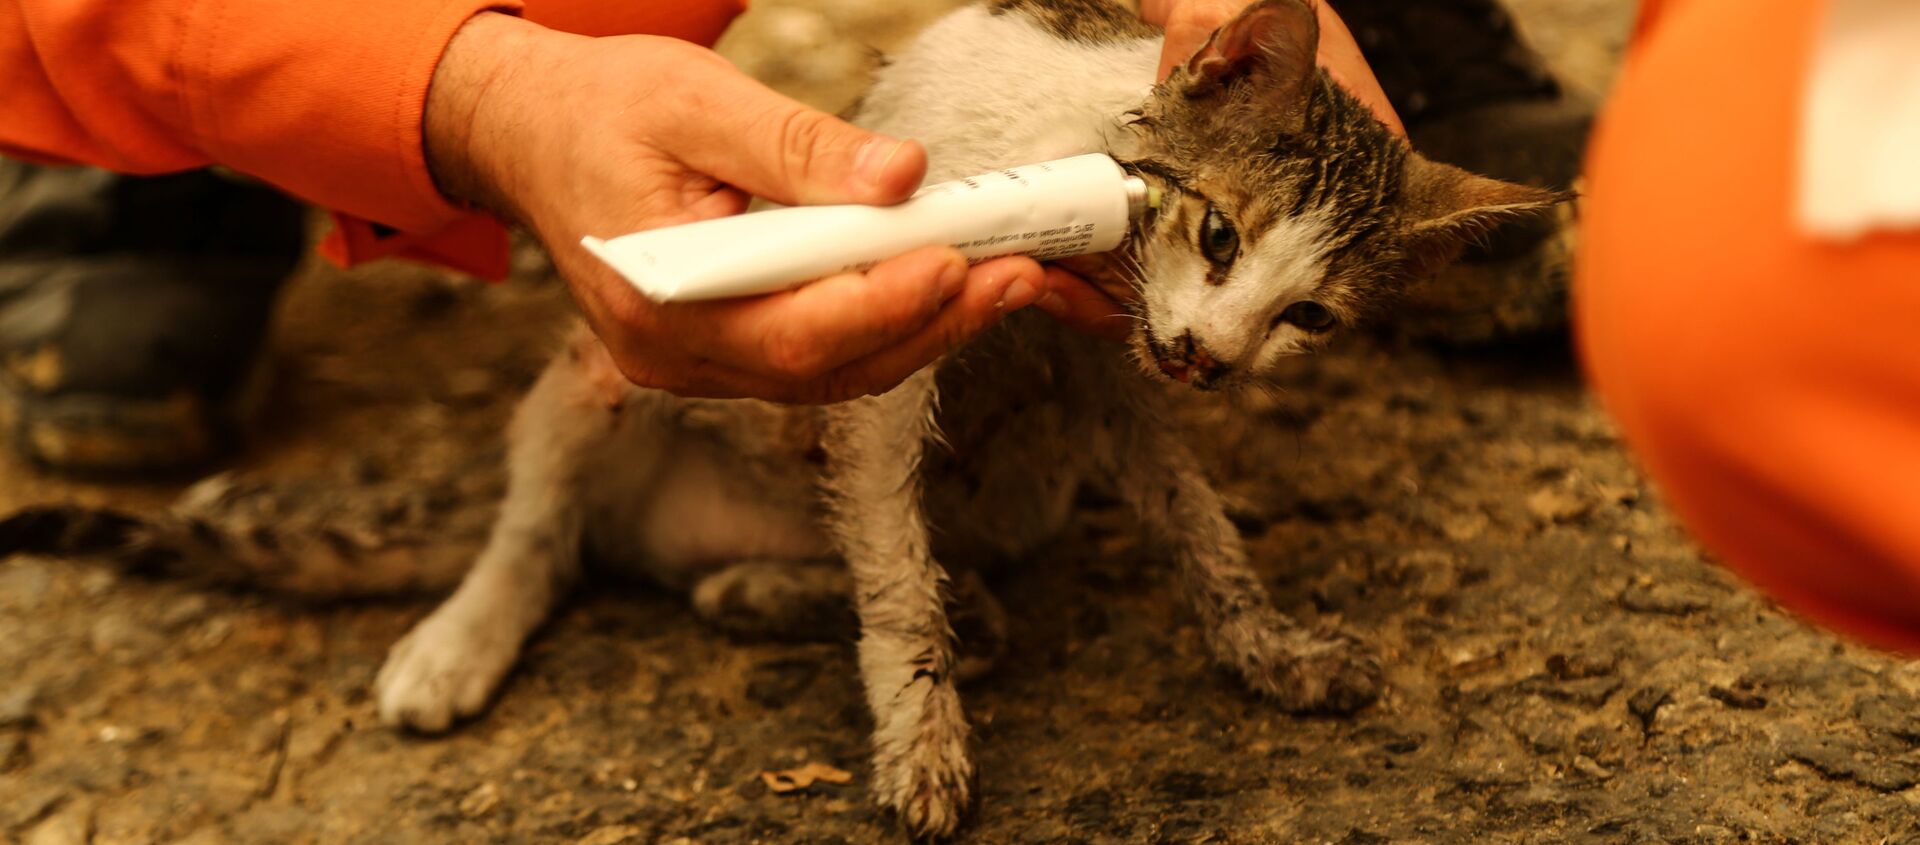 森林火災でケガを負った子猫の手当をするボランティア - Sputnik 日本, 1920, 03.08.2021